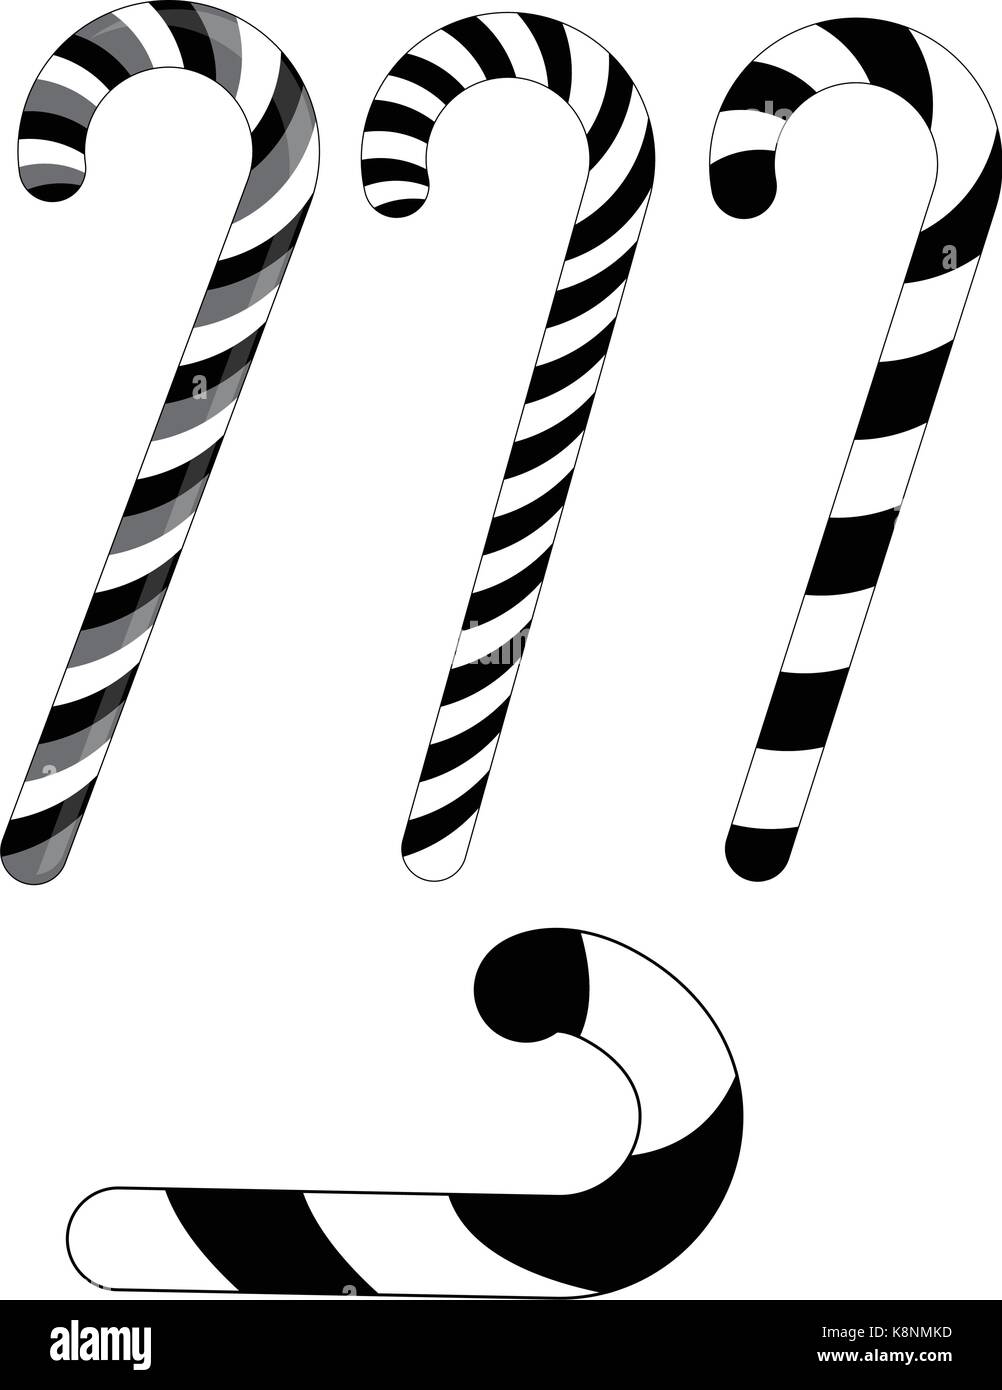 Candy Cane striped silhouette per Natale . Illustrazione di vettore isolato su uno sfondo bianco. Illustrazione Vettoriale